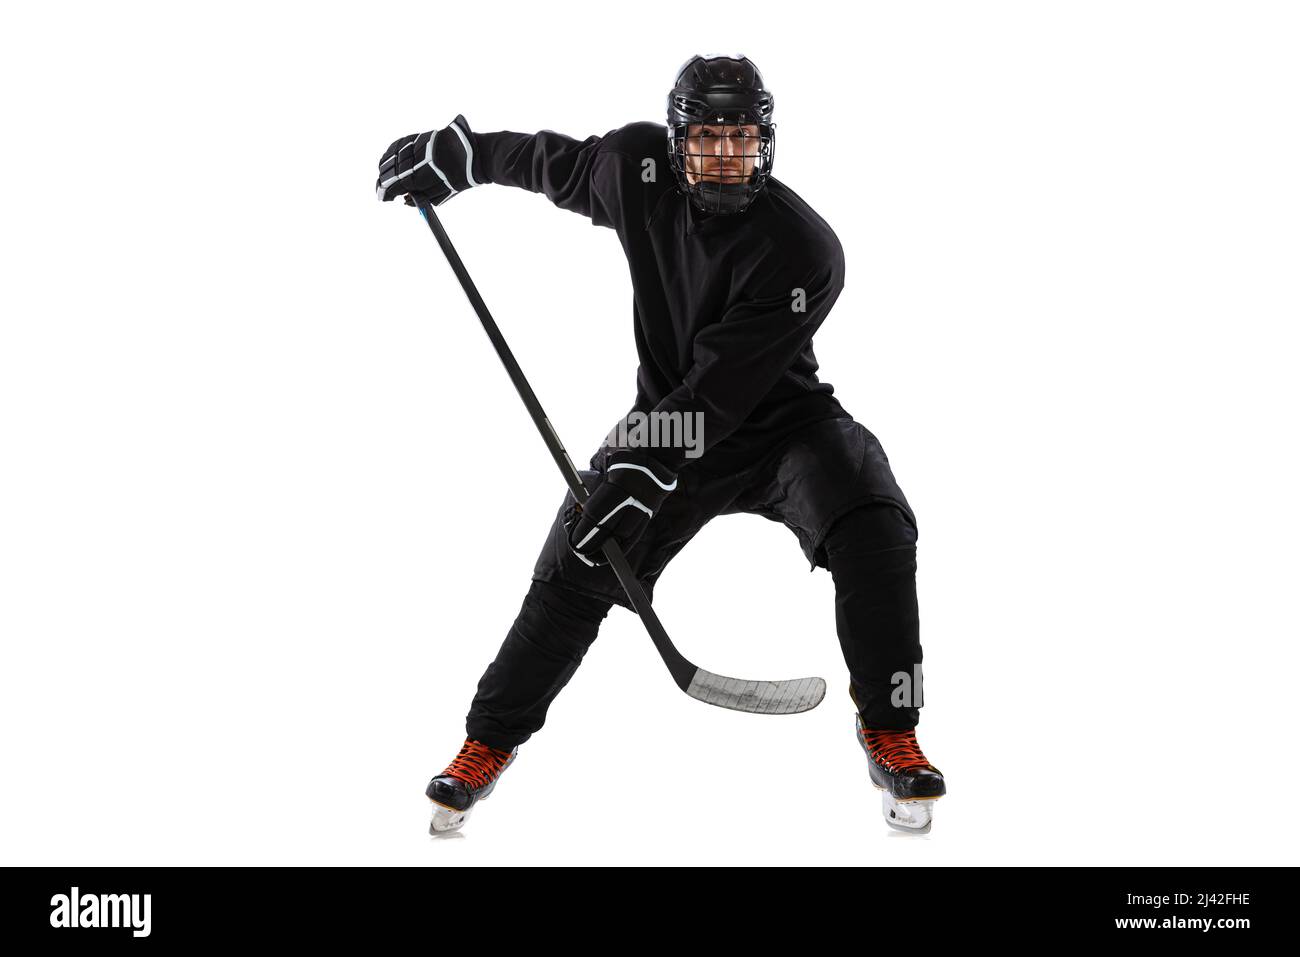 Sur la course. Joueur de hockey masculin avec bâton sur cour de glace et fond blanc. Banque D'Images